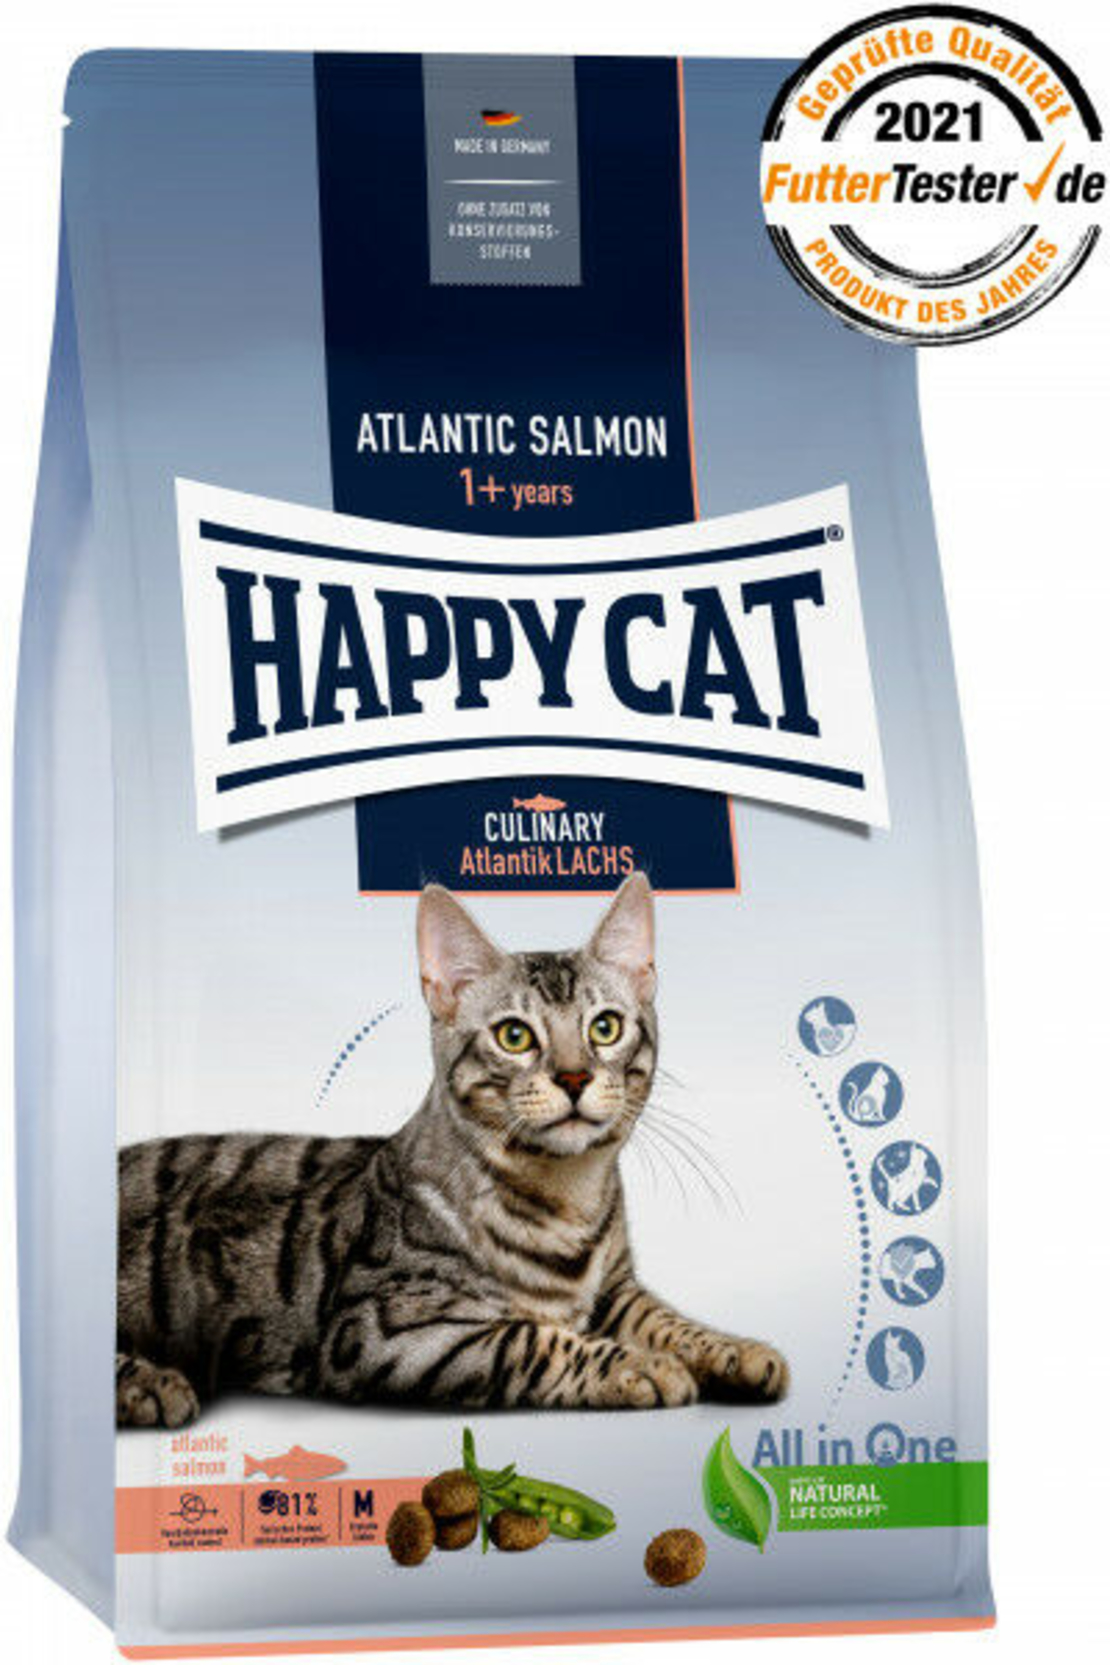 מזון לחתולים הפי קט קולינרי עם סלמון לחתולים בוגרים 300 גרם| happy cat culinary atlantik lachs atlantic salmon